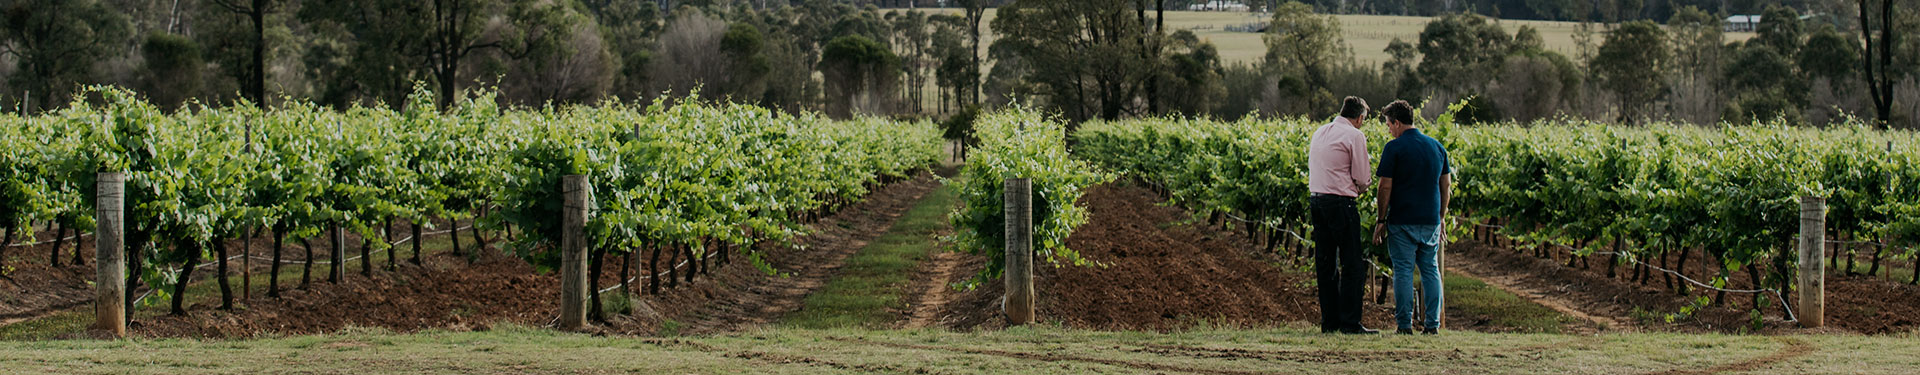 McGuigan Winemaker in the vineyard